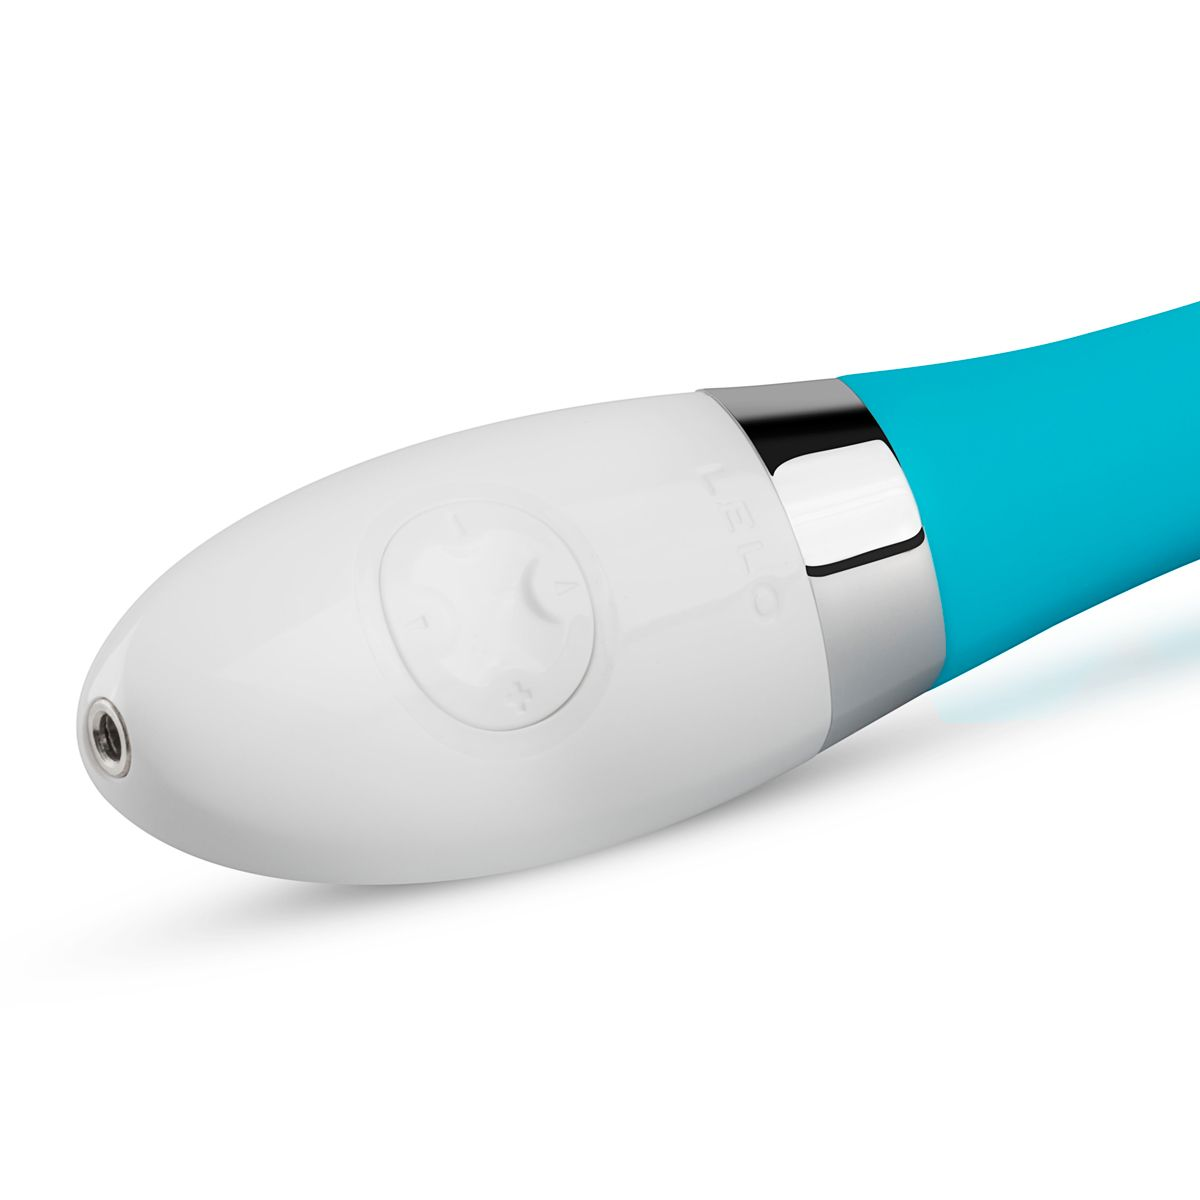 Gigi 2 - g-spot-vibrators Turquoise LELO LELO G-Spot - Vibrator